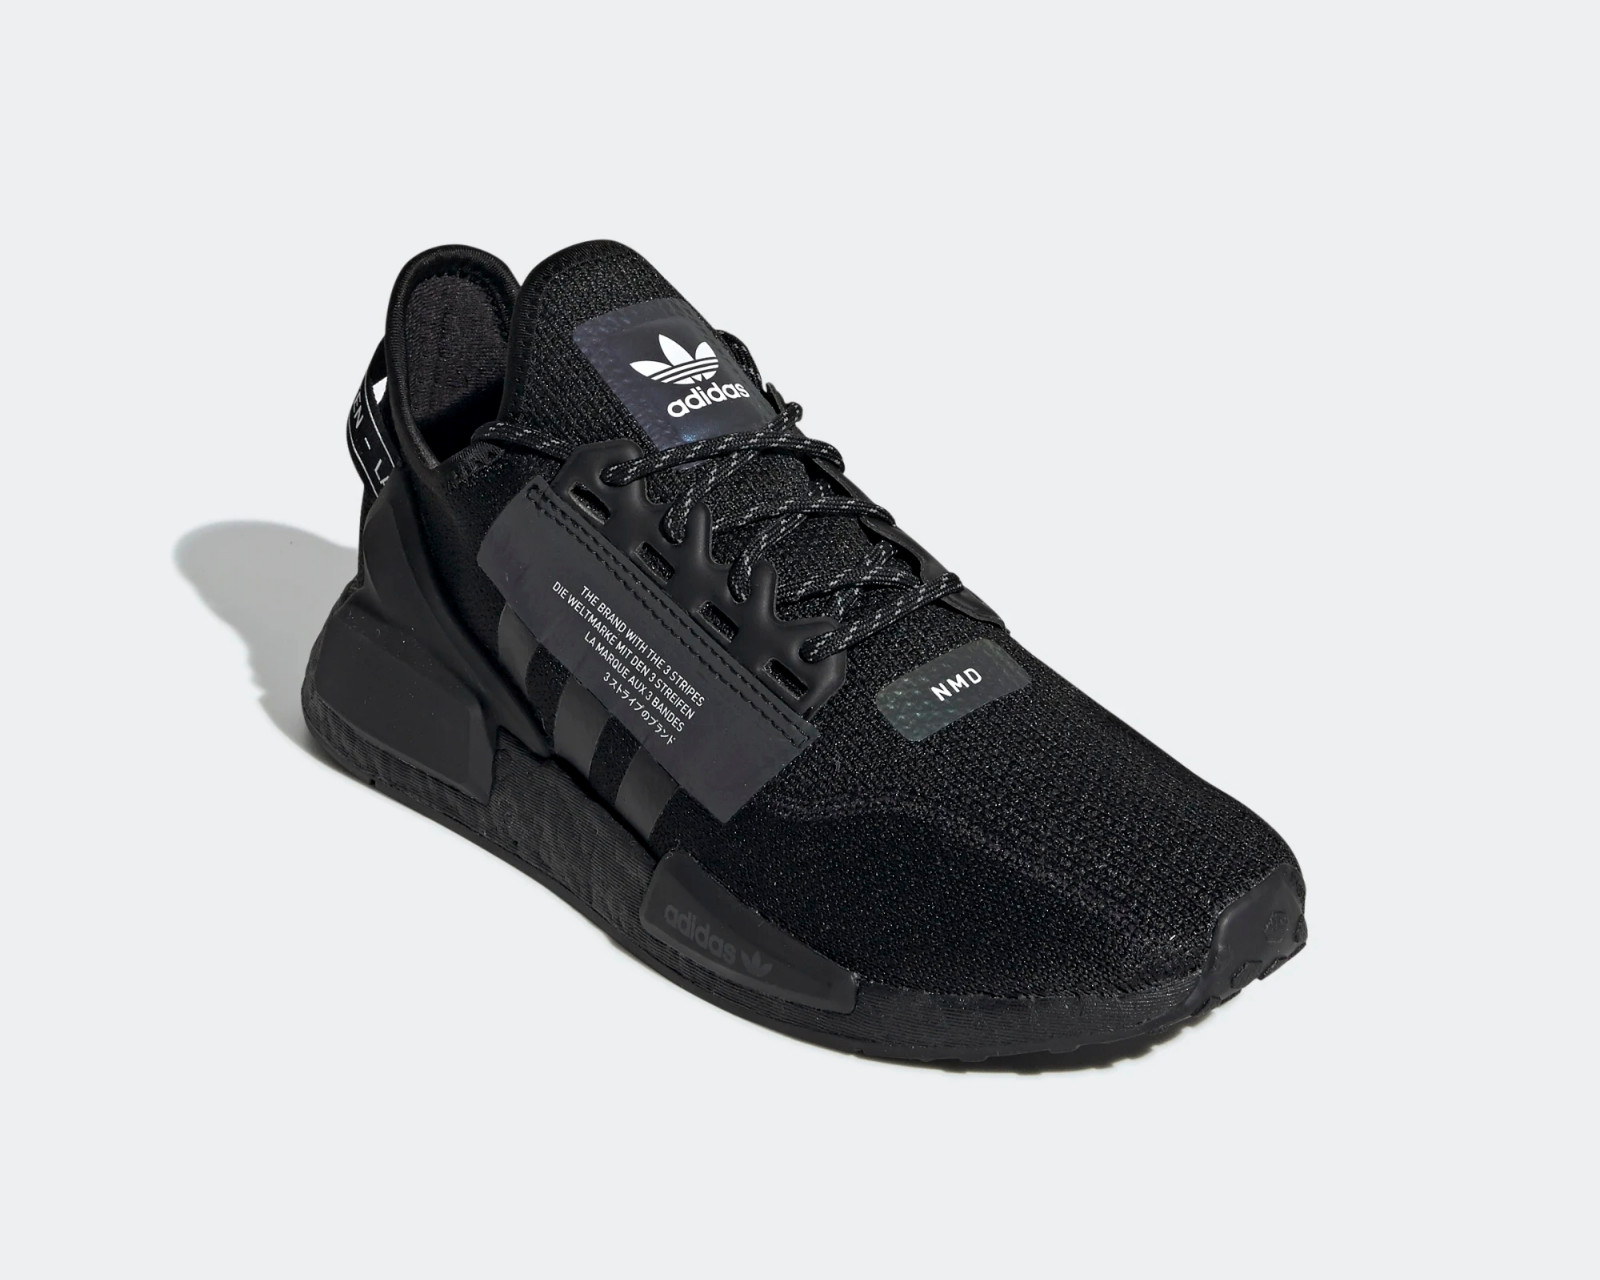  adidas NMD_R1 Men's Shoes Cloud White/Core Black ef3326 (8.5 M  US)